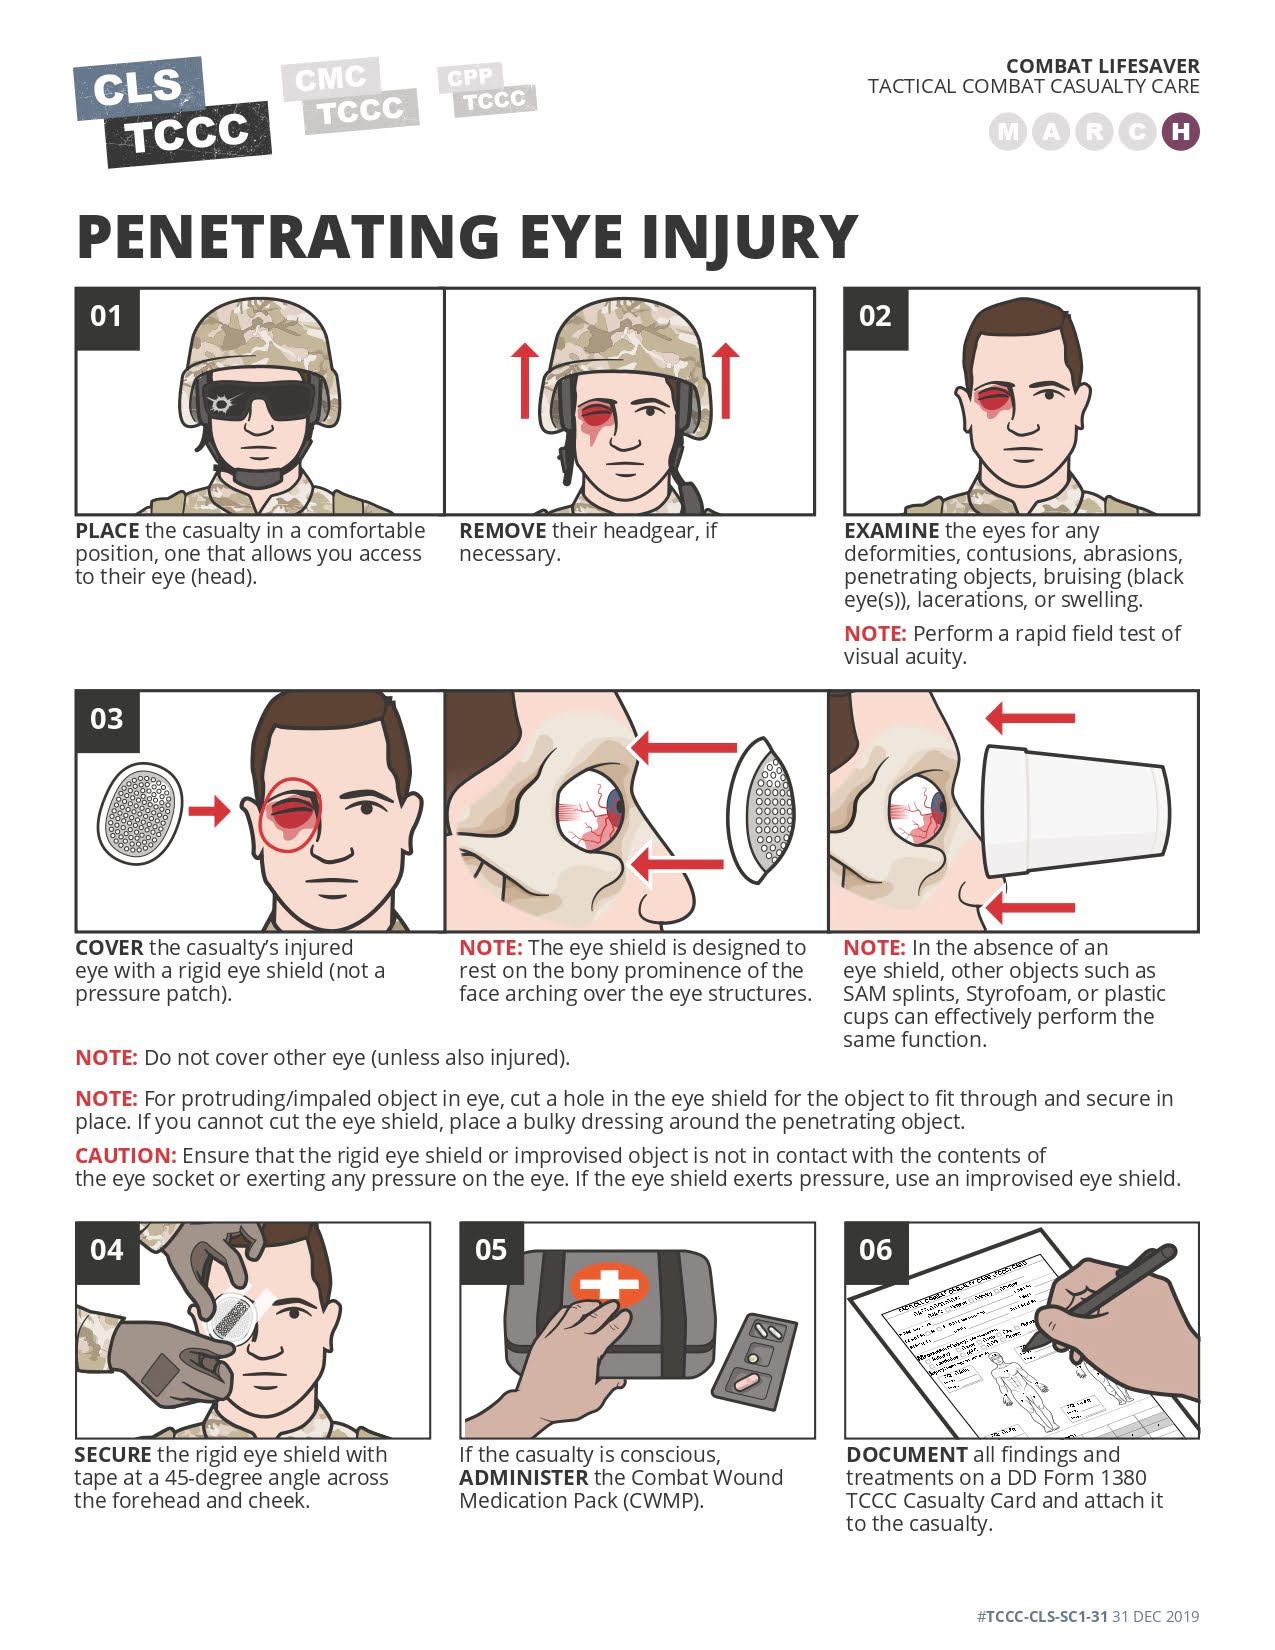 Penetrating Eye Injury